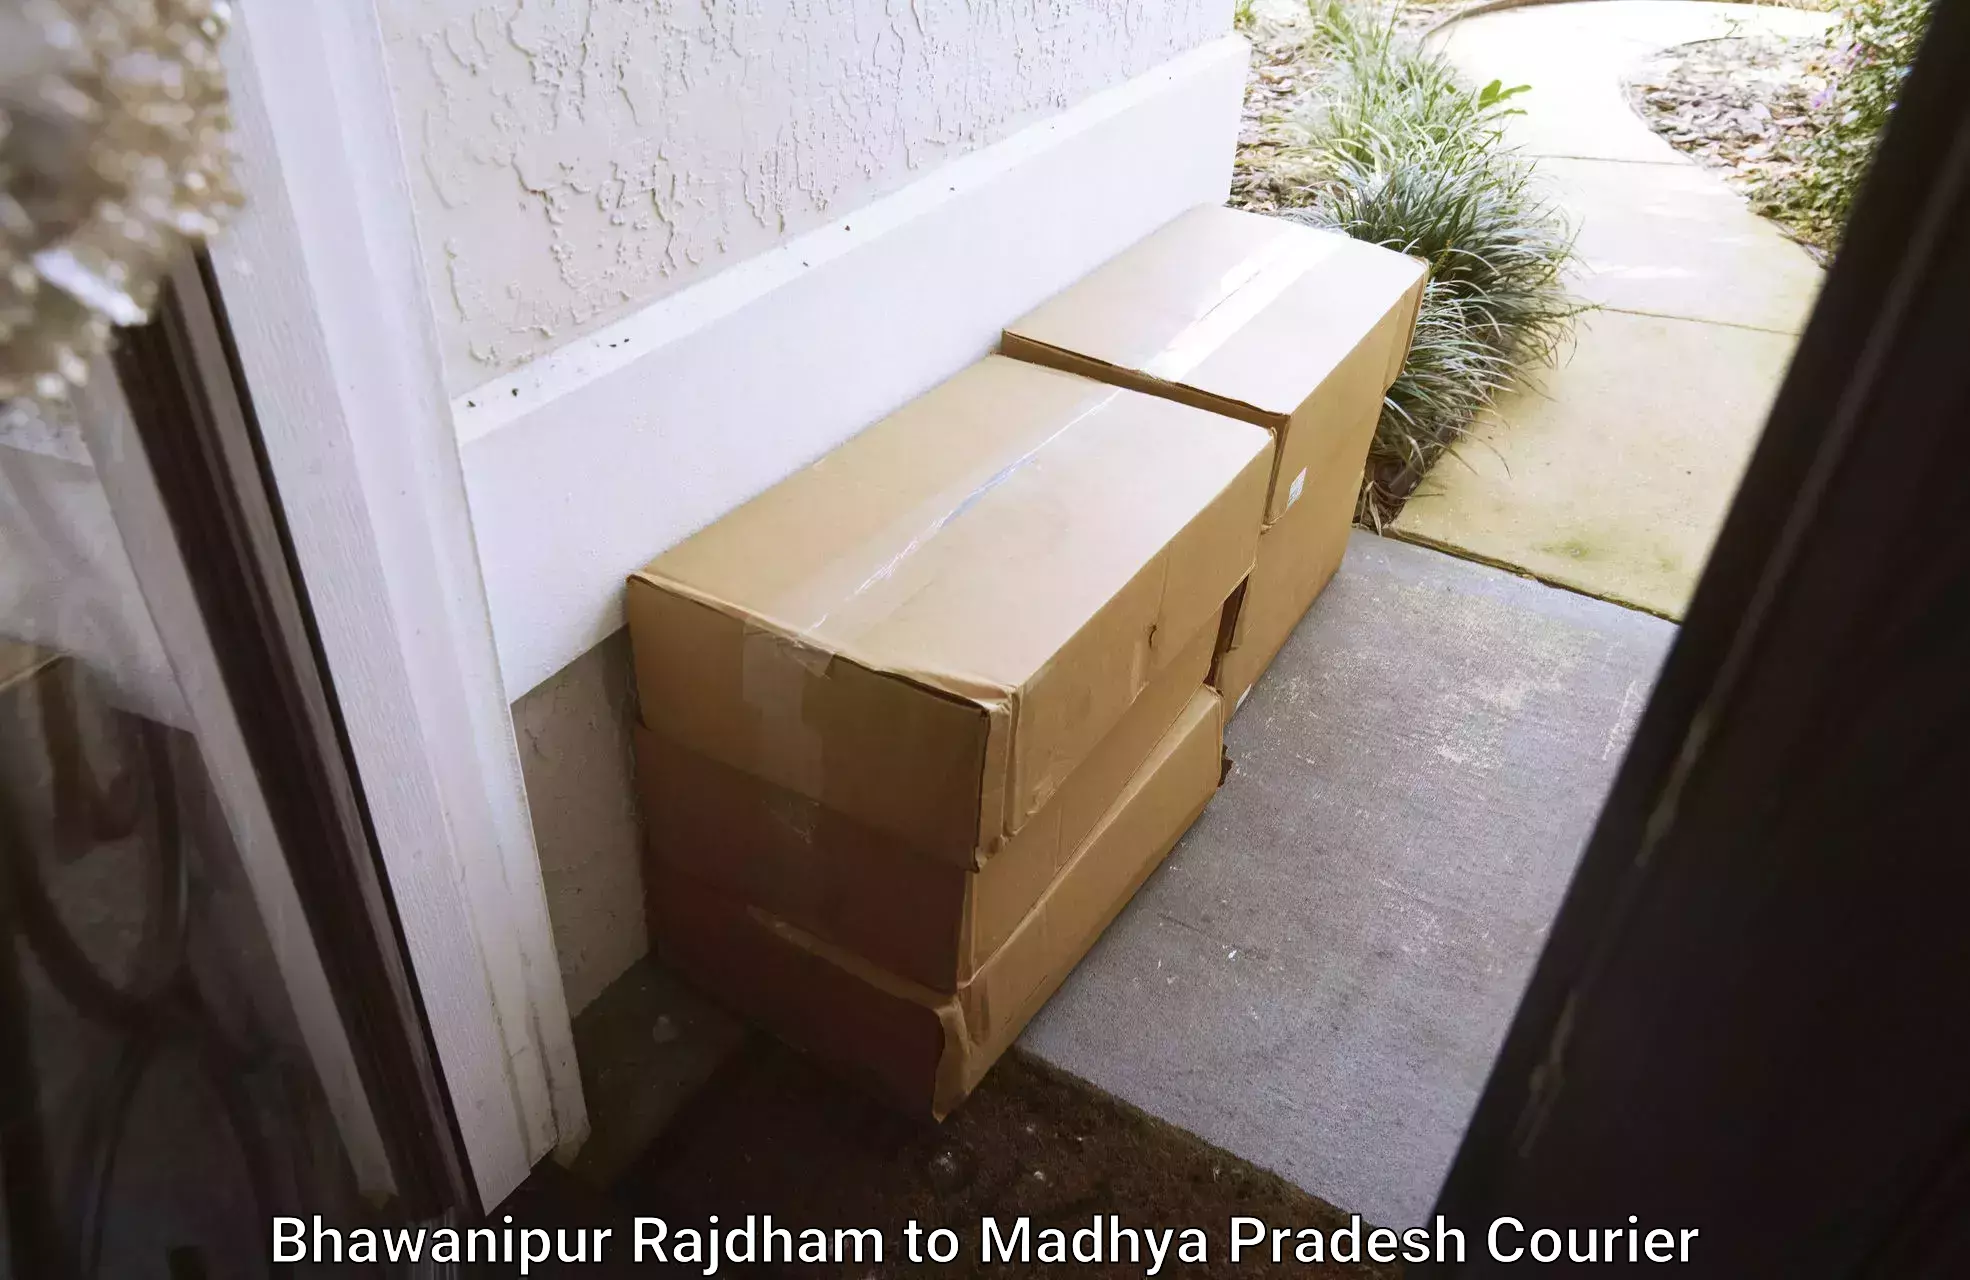 Furniture delivery service Bhawanipur Rajdham to Madhya Pradesh